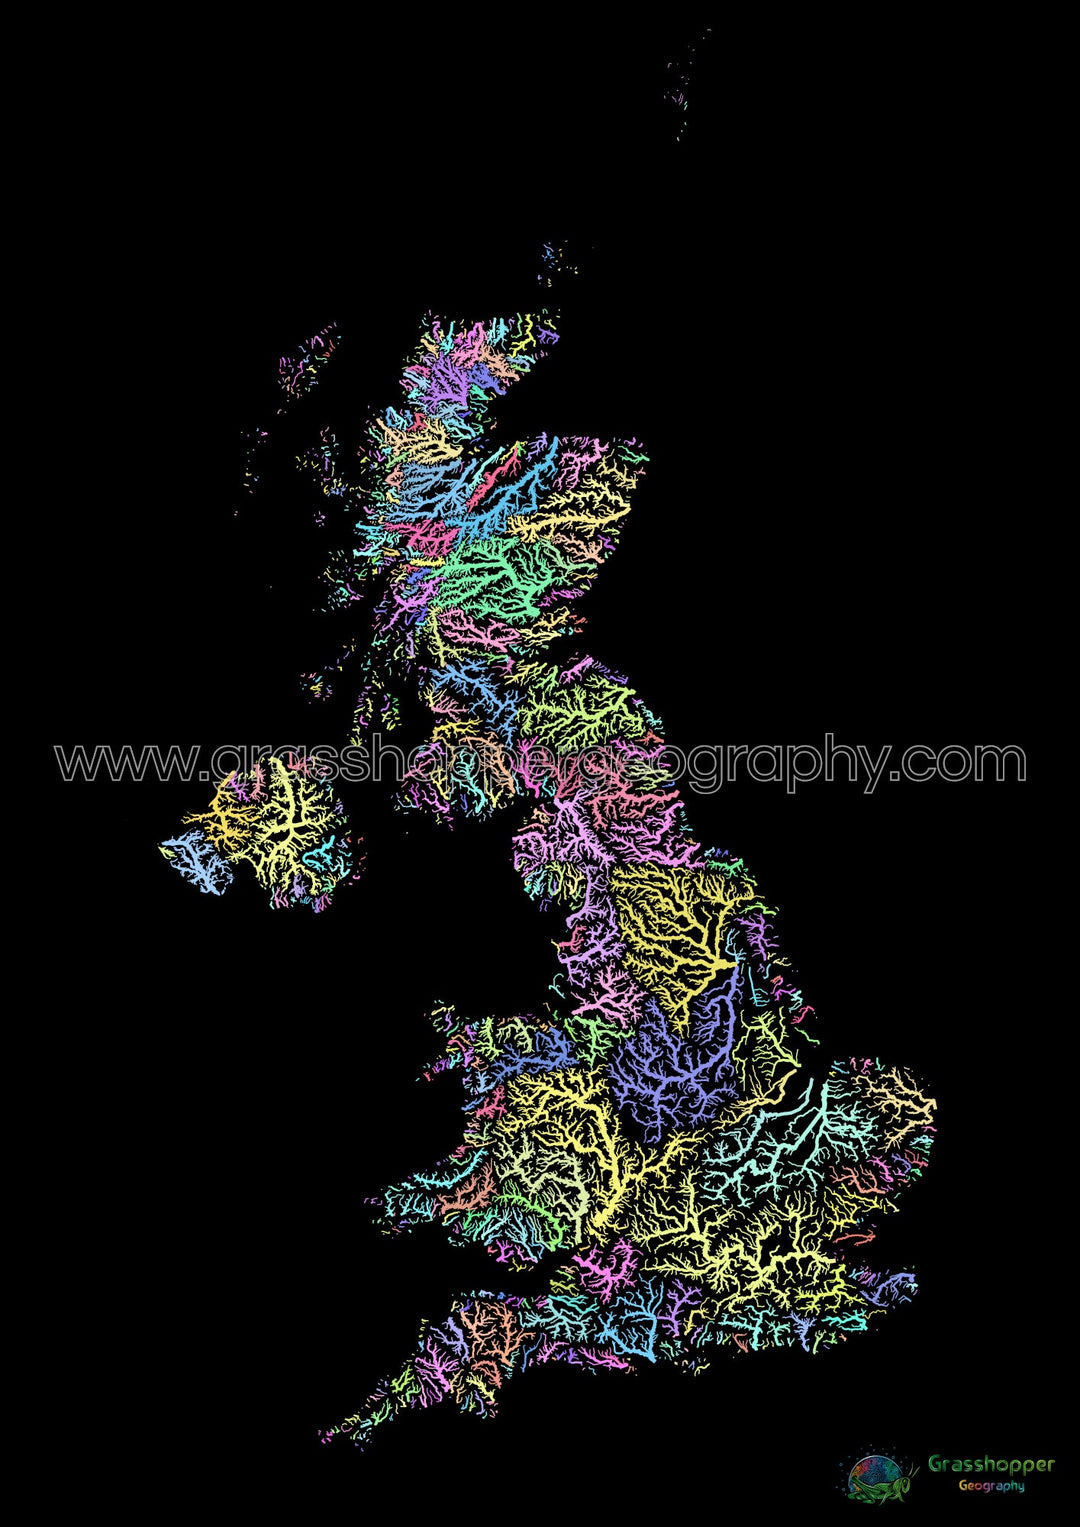 Royaume-Uni - Carte des bassins fluviaux, pastel sur noir - Fine Art Print